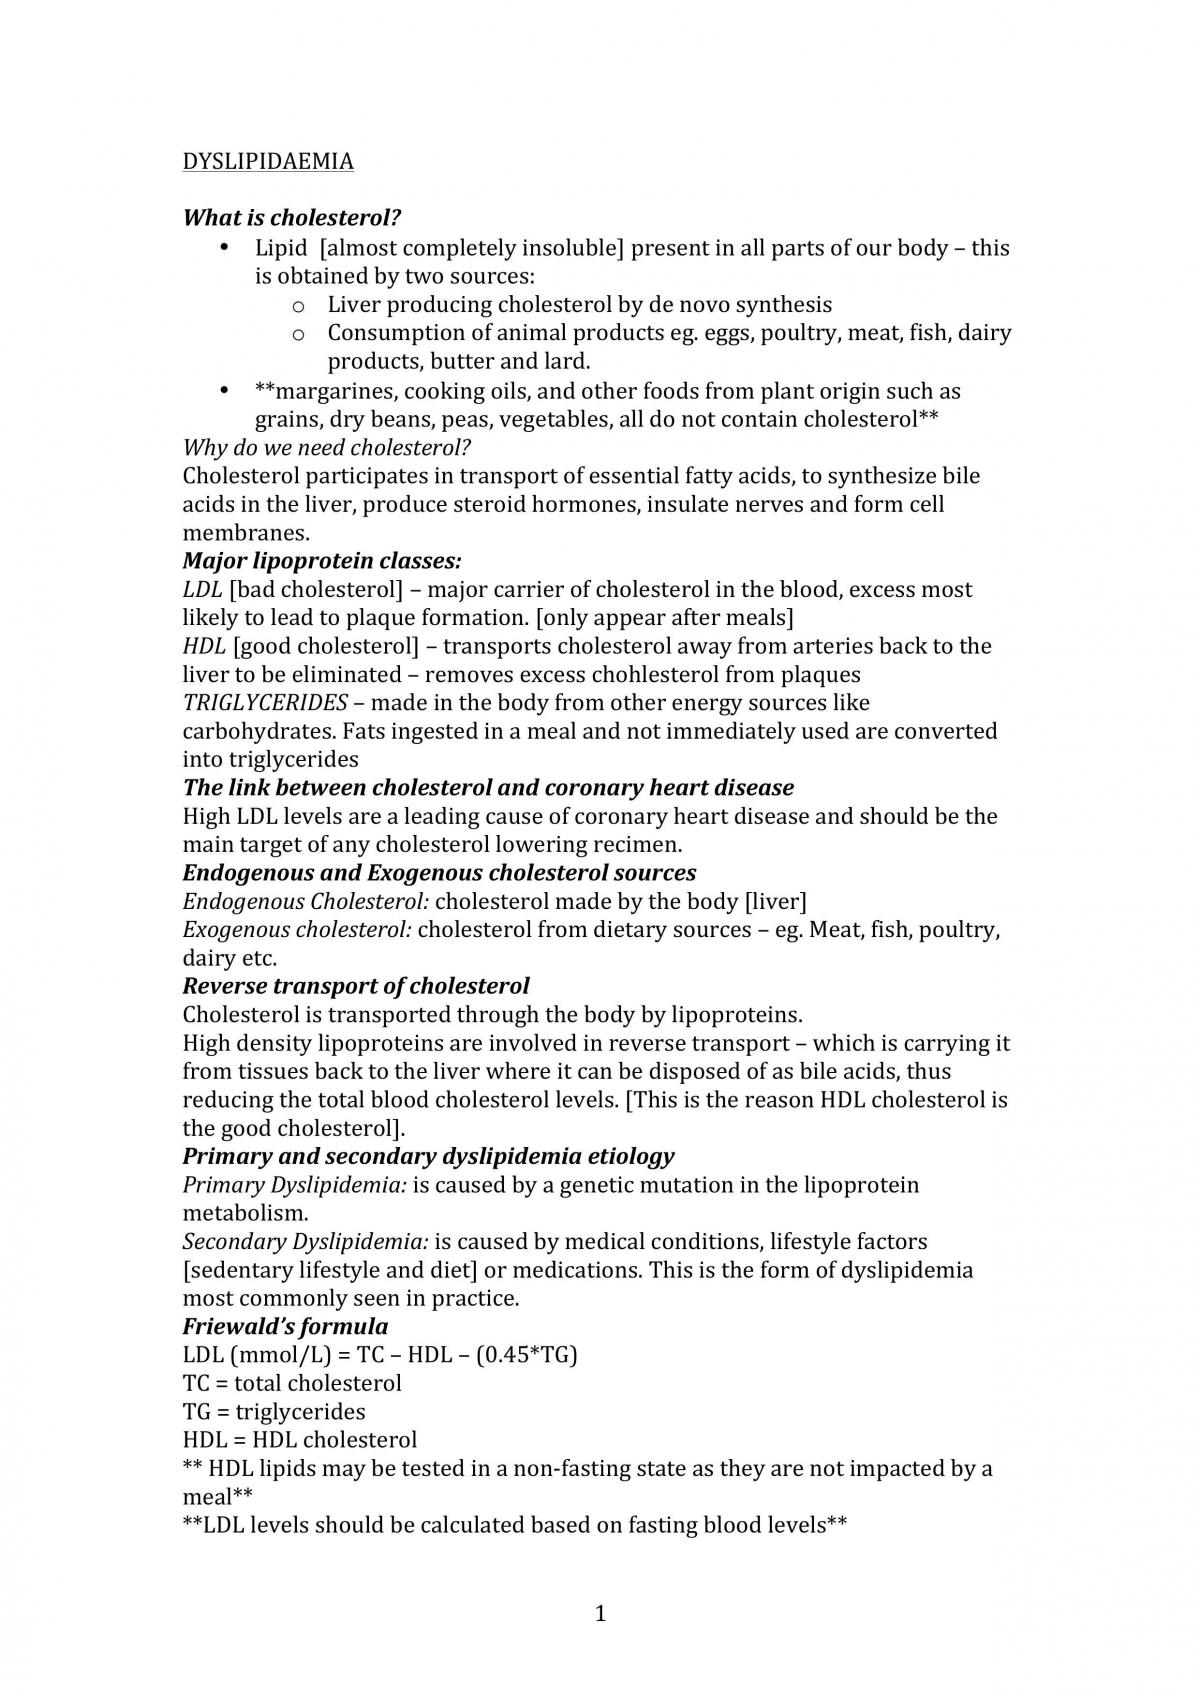 Pharmacology of Dyslipademia, Angina and Atherosclerosis - Page 1